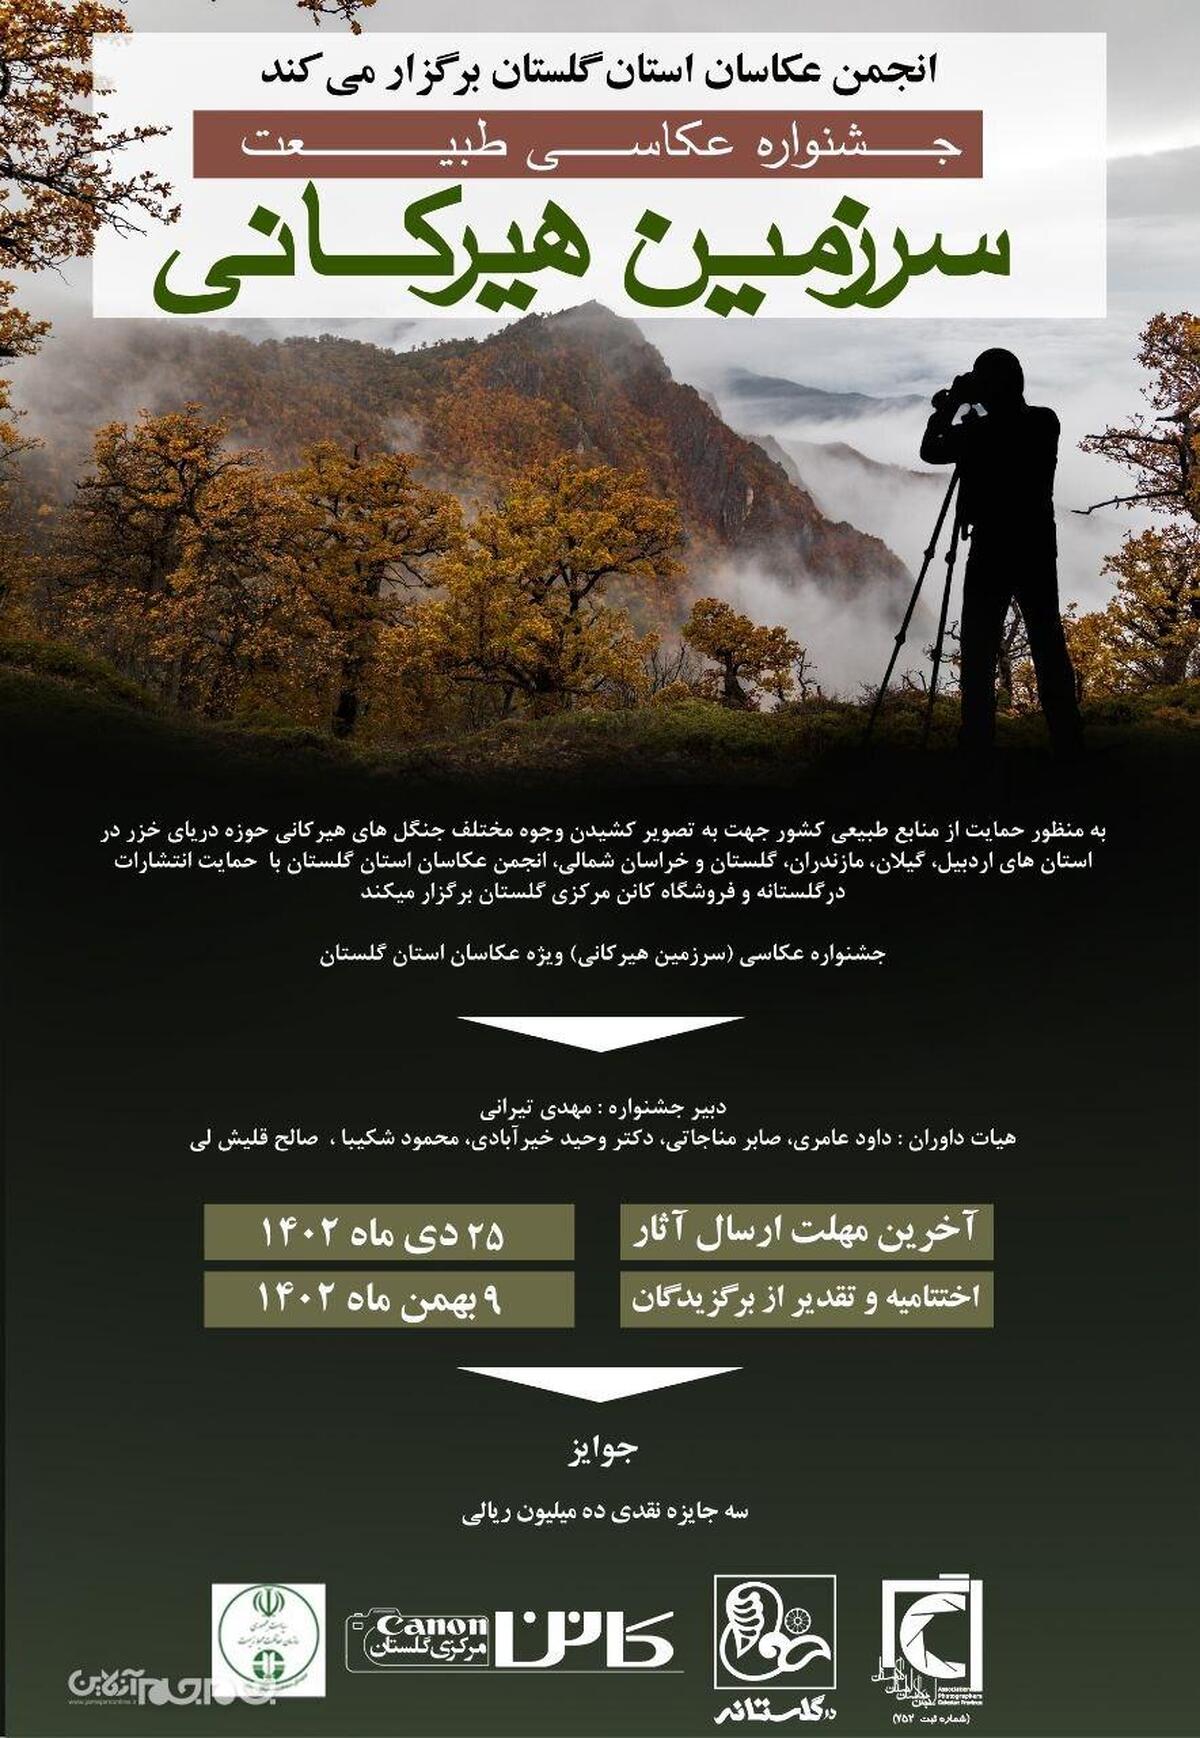 به همت انجمن عکاسان استان گلستان جشنواره عکاسی طبیعت (سرزمین هیرکانی) برگزار می شود.